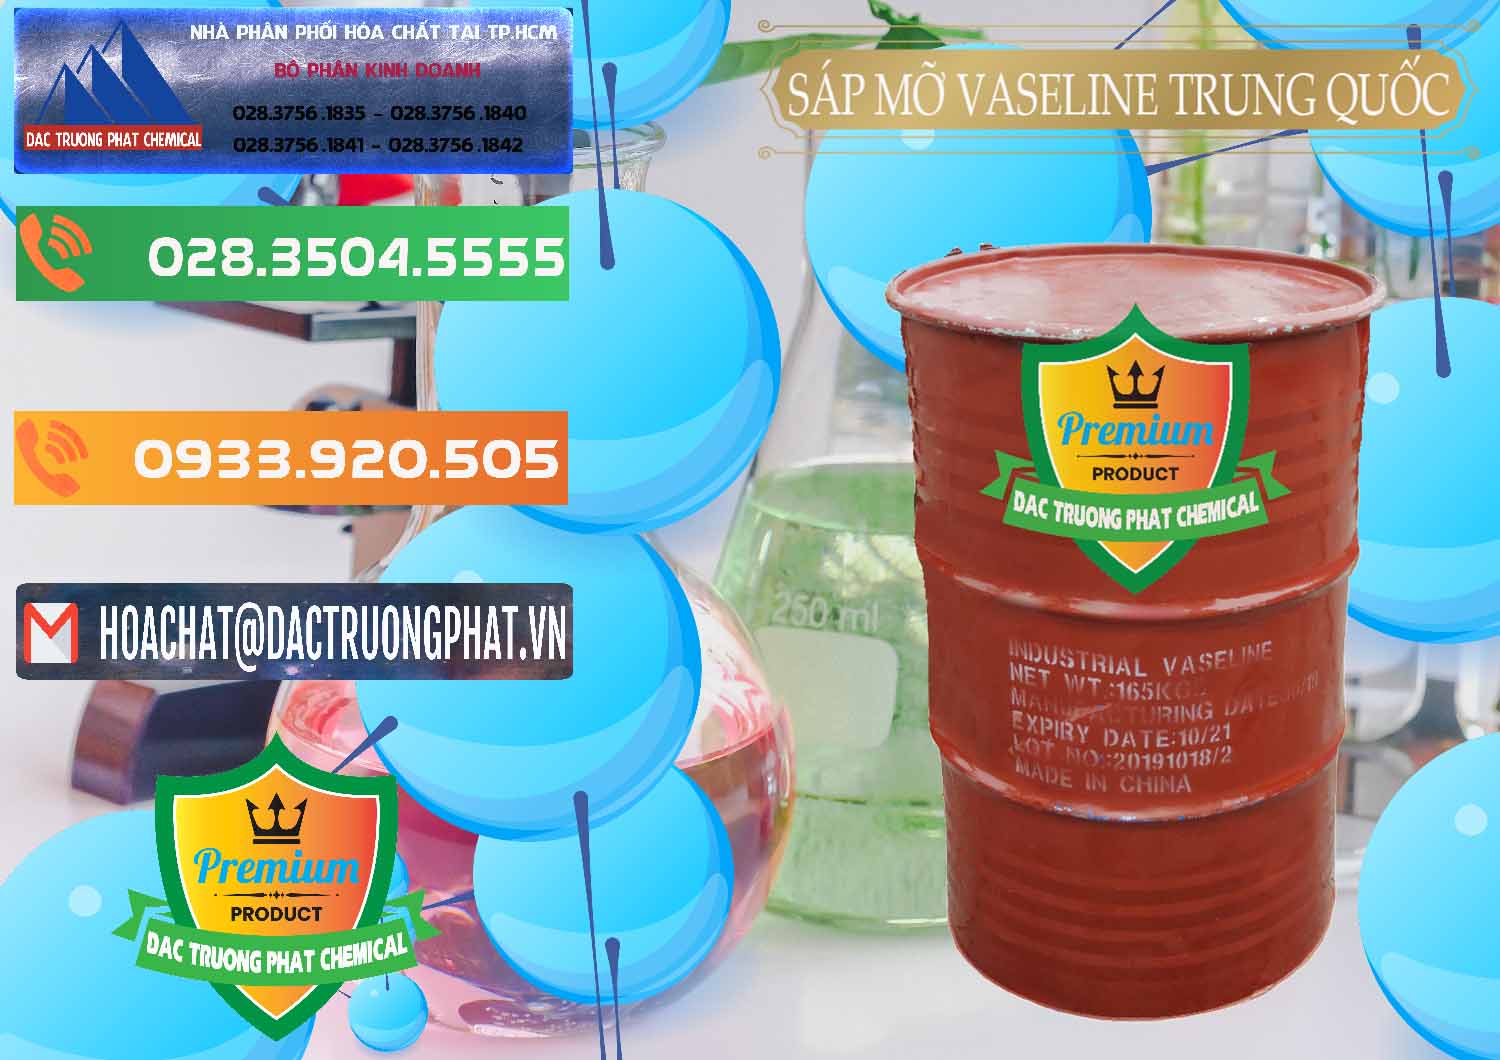 Chuyên cung ứng _ bán Sáp Mỡ Vaseline Trung Quốc China - 0122 - Chuyên nhập khẩu và phân phối hóa chất tại TP.HCM - hoachatxulynuoc.com.vn